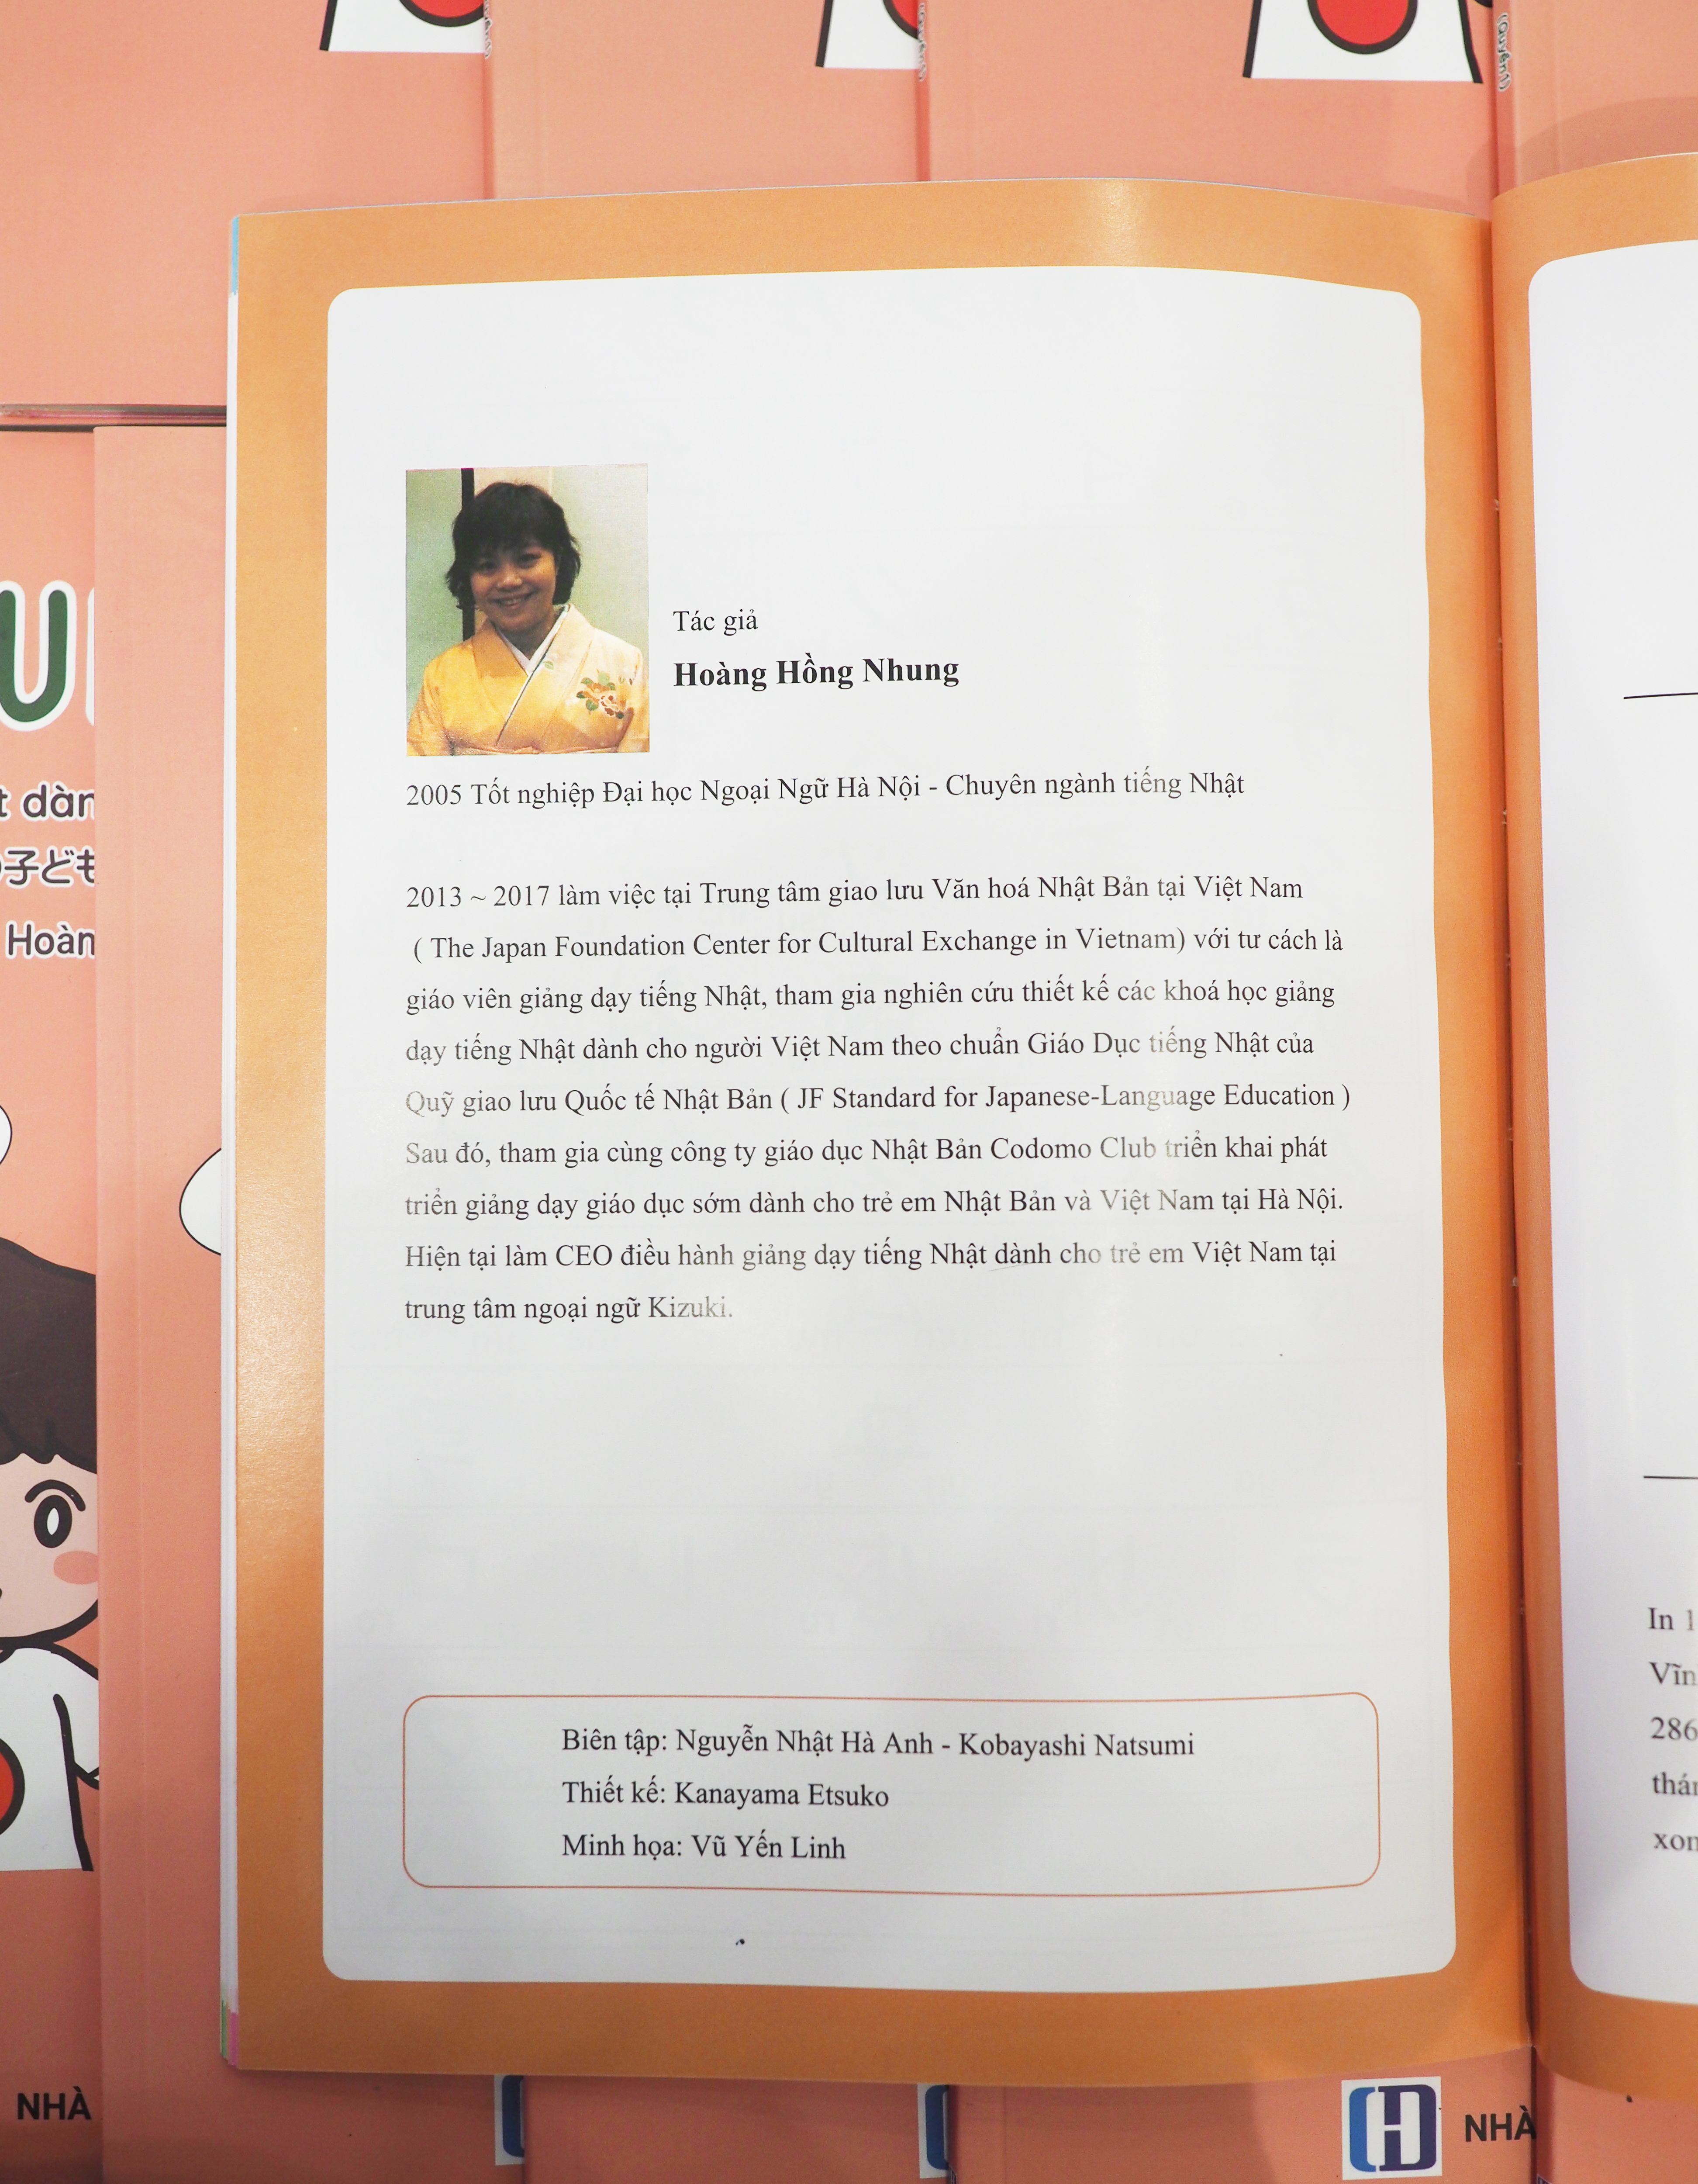 Sách KIZUKI KIDS - Tiếng Nhật dành cho trẻ em Việt Nam (quyển 1)